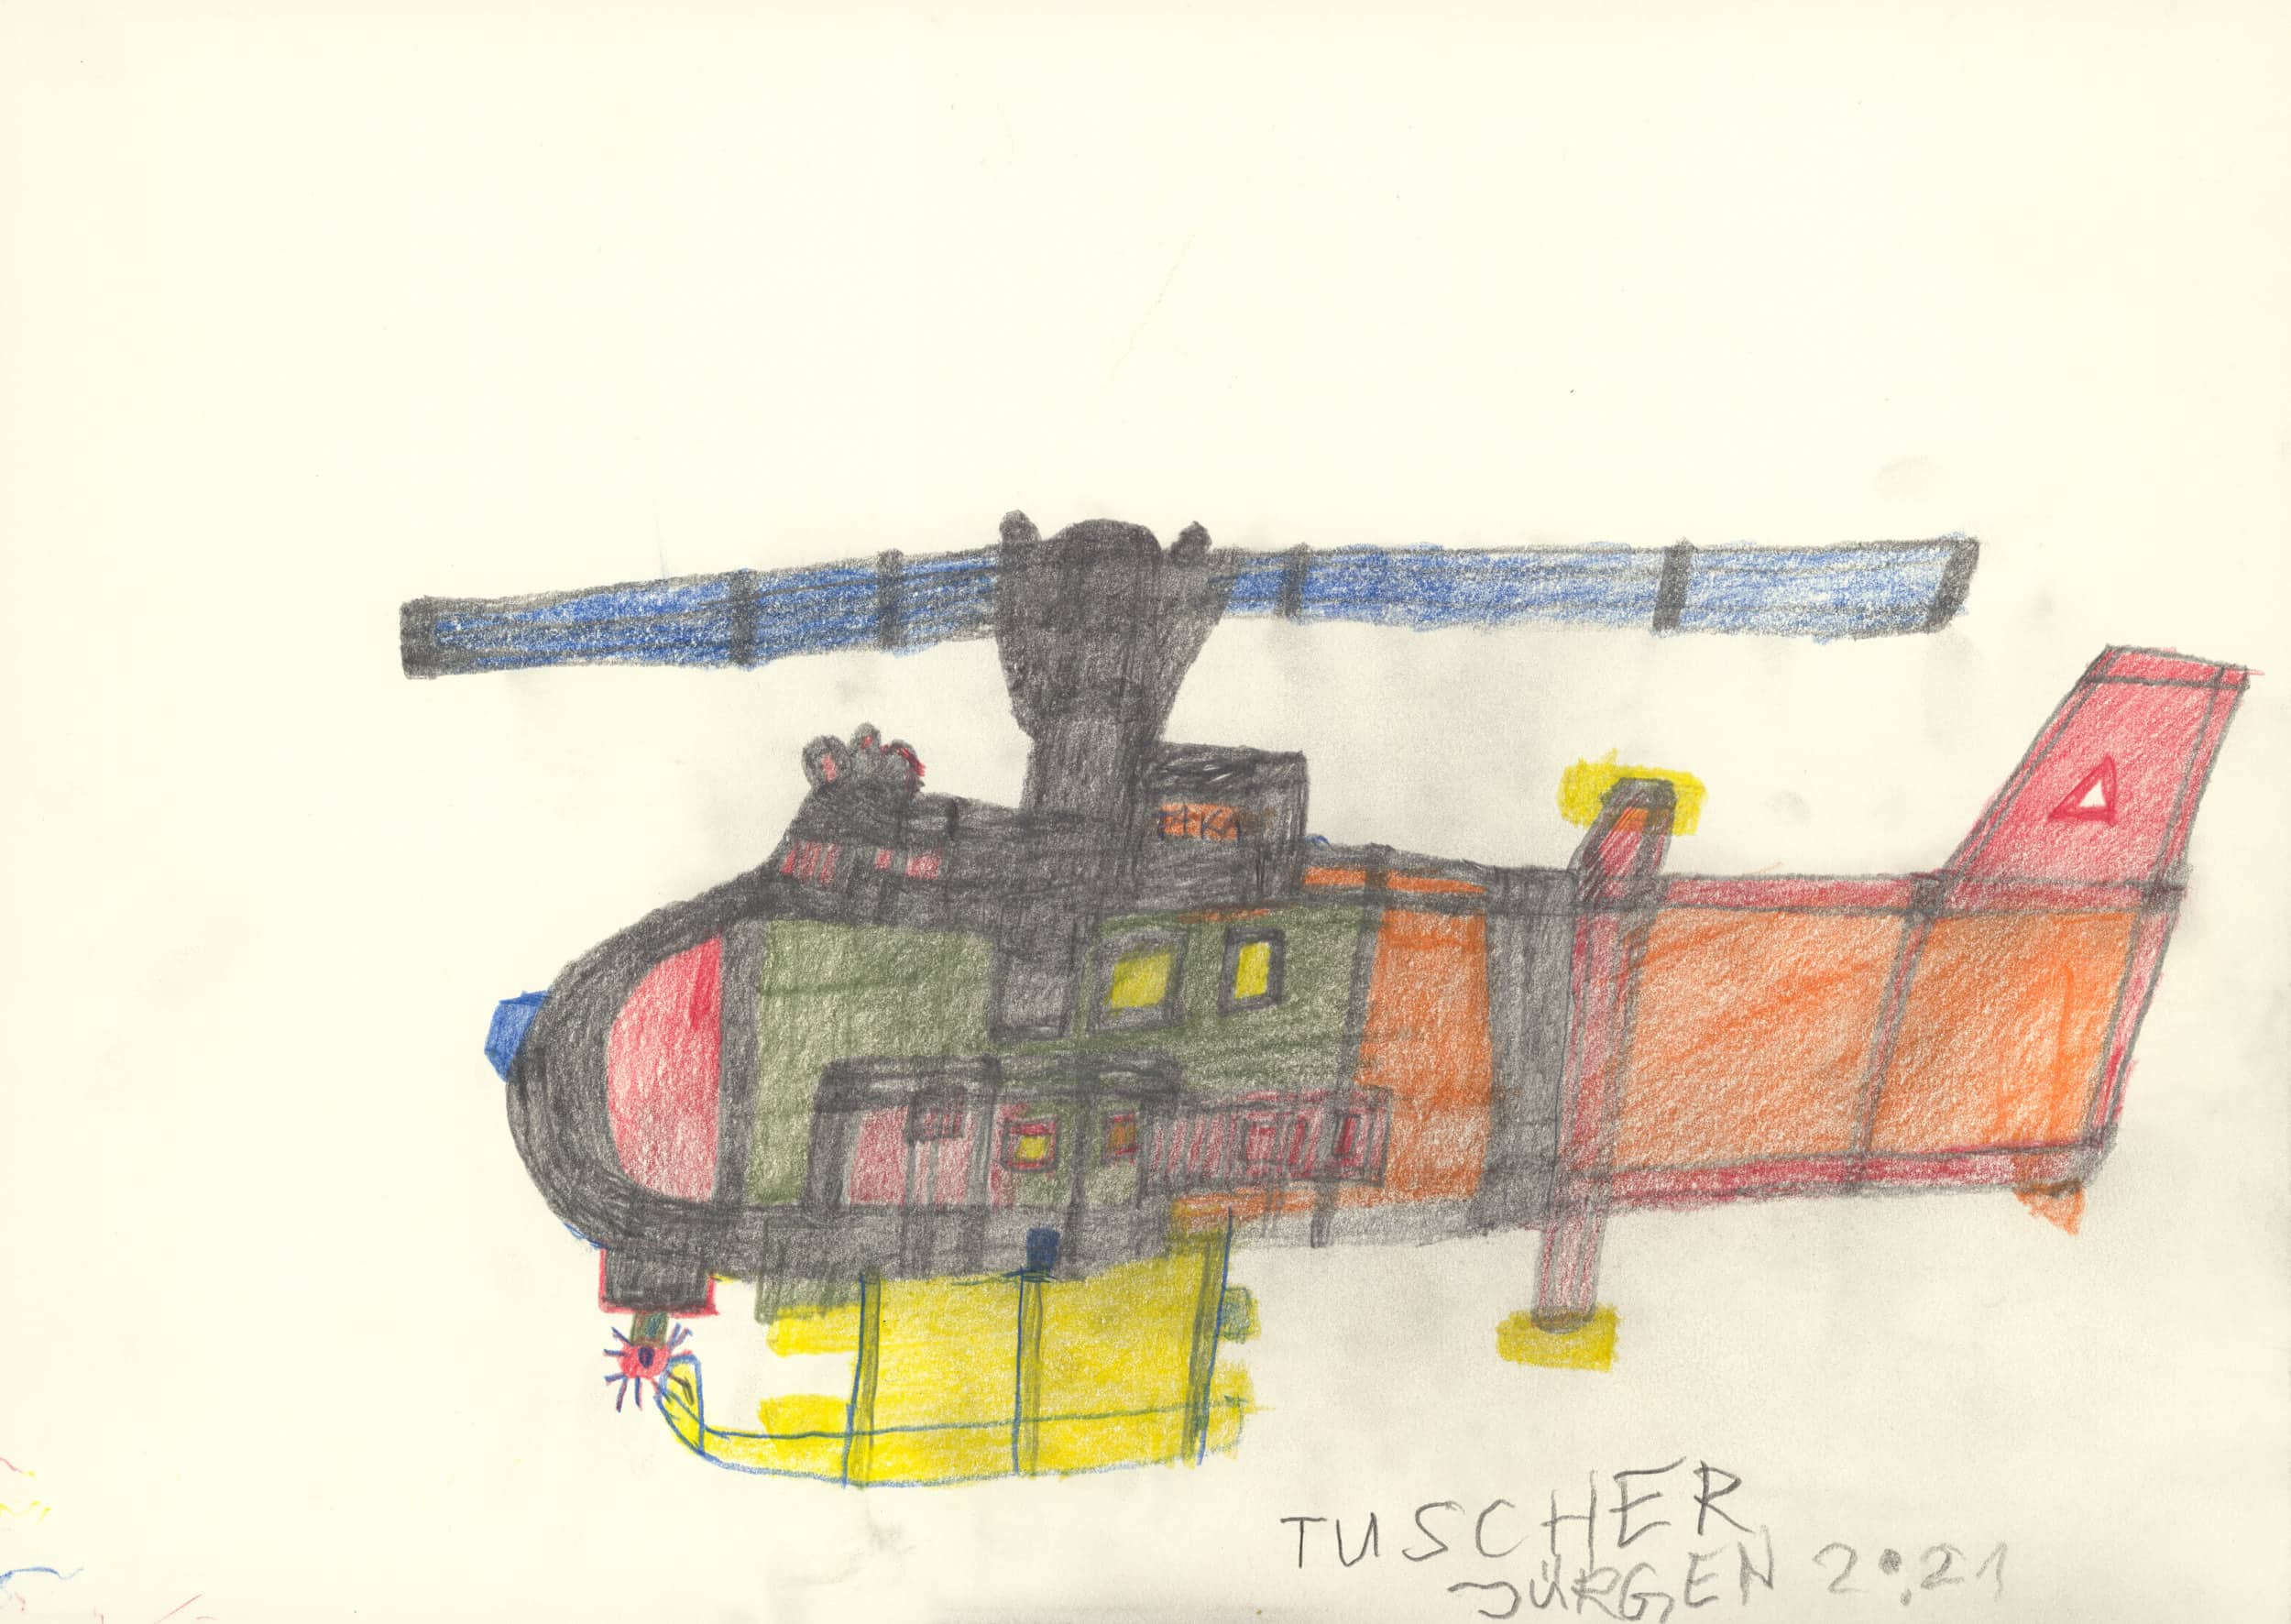 tauscher jürgen - Hubschrauber / Helicopter